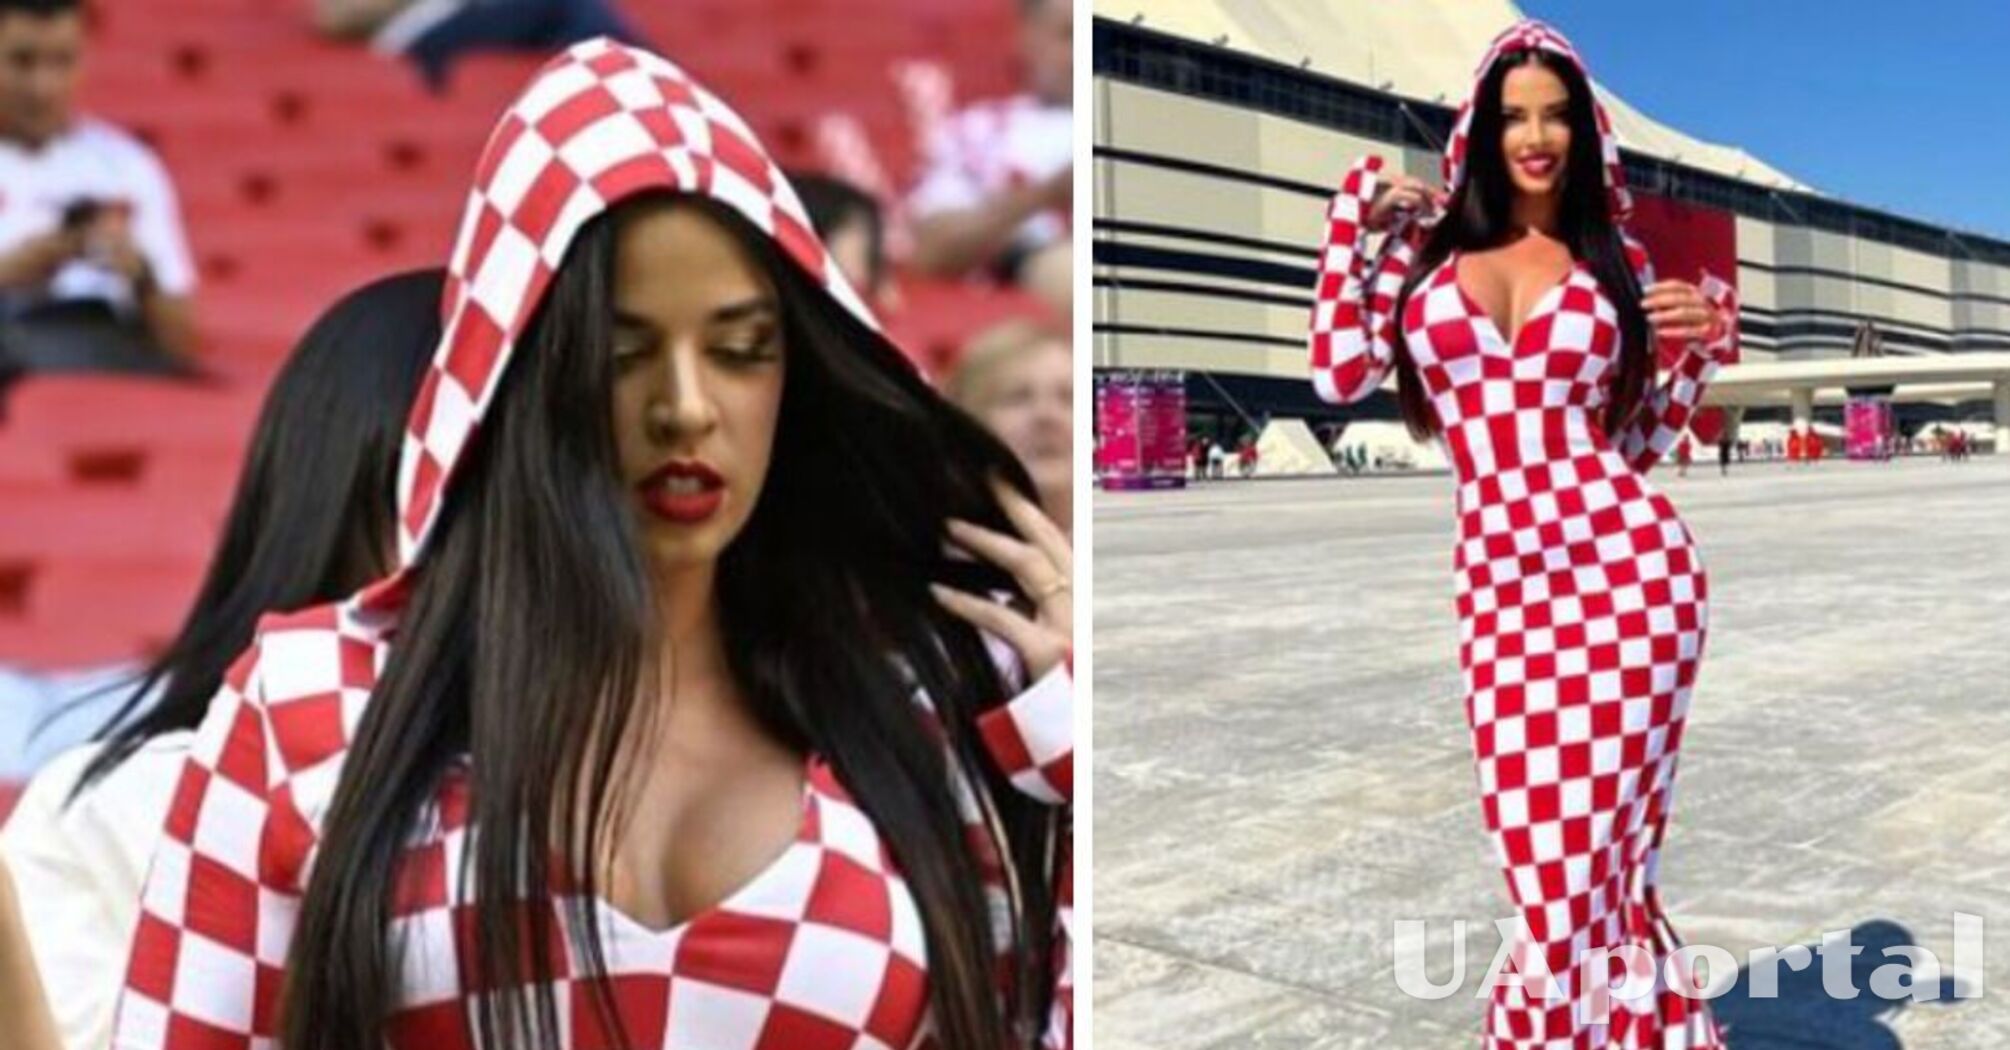 Хорватская красавица рискует попасть в тюрьму из-за откровенных платьев на чемпионате мира по футболу в Катаре (фото)